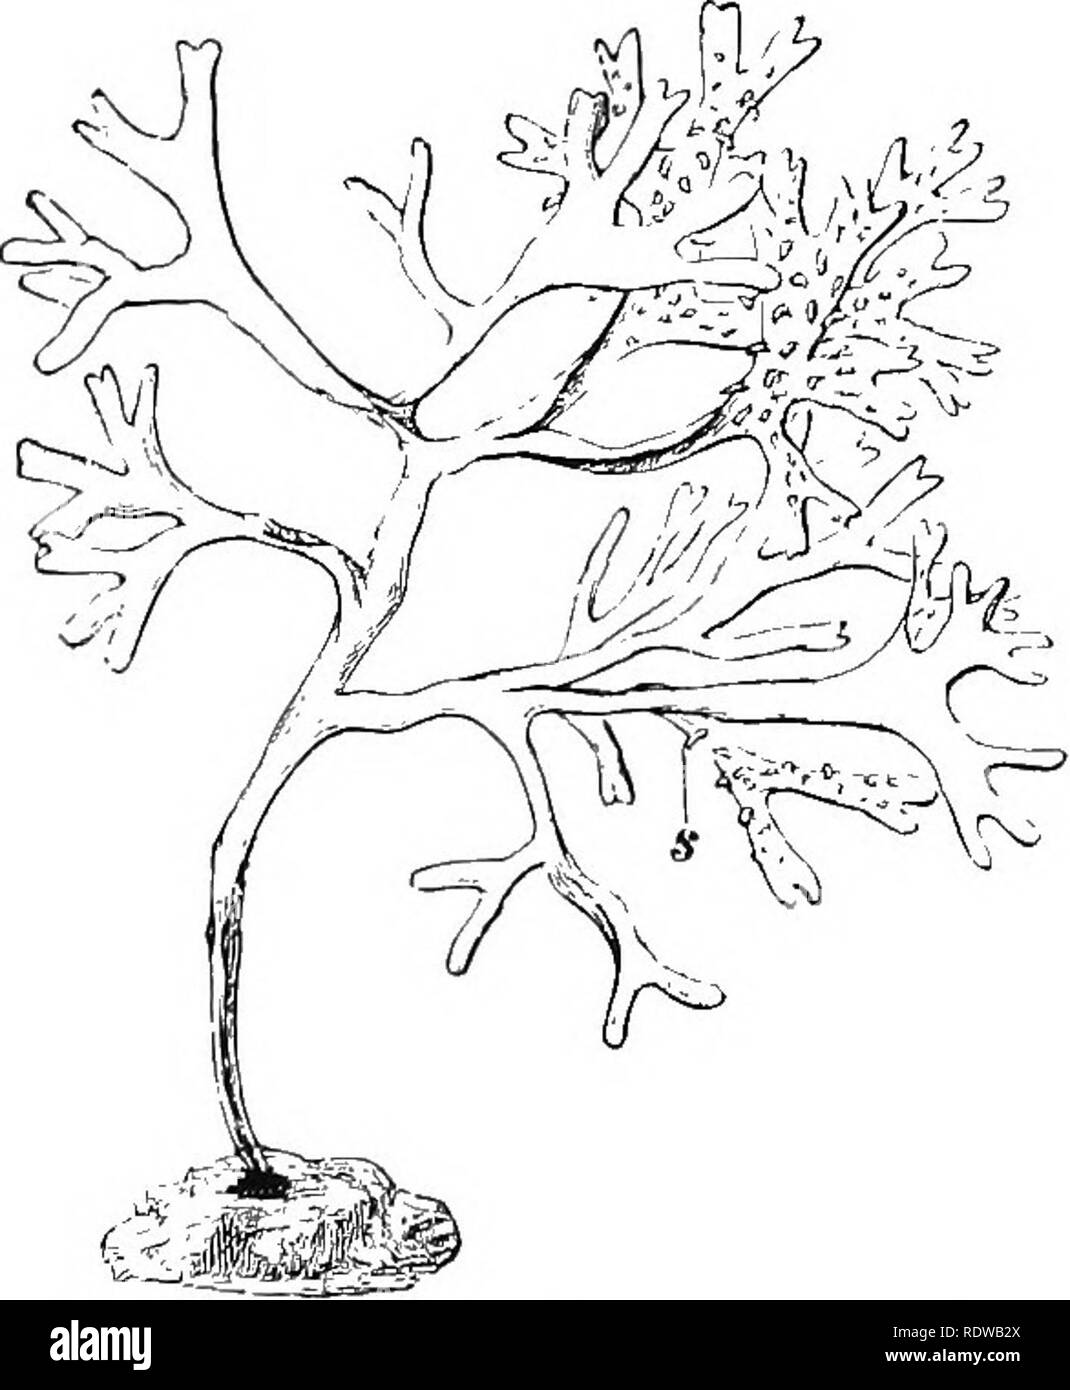 . Pflanzen; ein Lehrbuch der Botanik. Botanik. 38 ANLAGE STEUl "TUEES der anderen Gruppe, durch Fiuus (Abb. dargestellt. 21), produziert keine asexuellen Pilzsporen, ist aber heterogamous. Eine einzelne oogonium Formen in der Regel acht Eier (Abb. 21), die frei im Wasser schweben (Abb. entladen sind und. 21, E). Tlie antheridia (Abb. 21, C) produzieren zahlreiche Minute seitlich biciliate Spermien, die abgeführt werden (Abb. 21, fr), Schwimmen in großer Zahl über die große Eier (Abb. 21, F, II), und schließlich eine Sicherungen mit einem Ei und einem oospore gebildet wird. Da die Spermien Schwarm sehr aktiv über das Ei und verstoßen gegen das Sie o Stockfoto